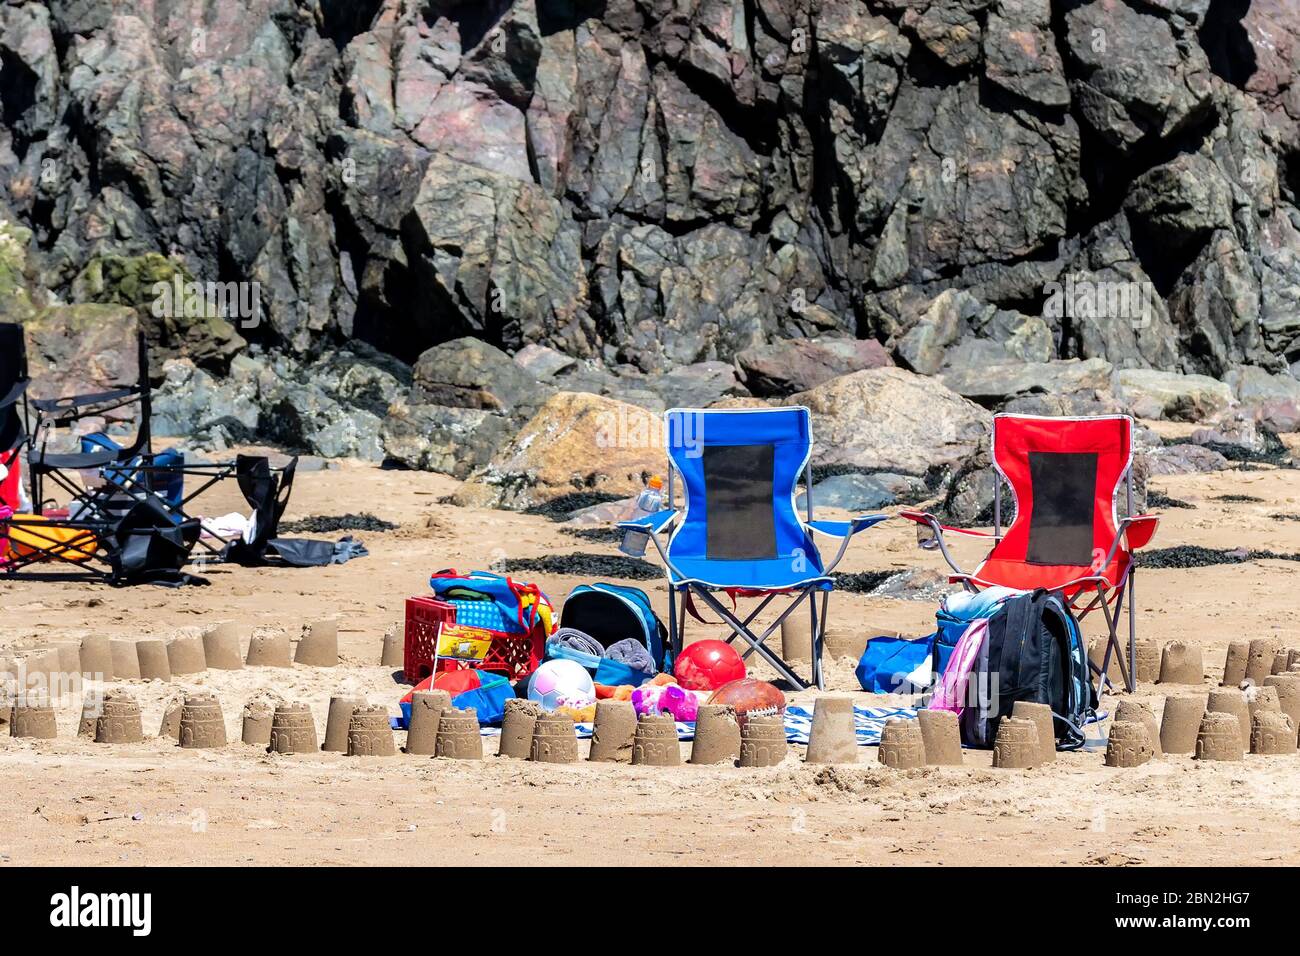 Deux chaises de plage, serviettes, balles et autres articles liés à la plage sur une plage. C'est un jour ensoleillé. Banque D'Images